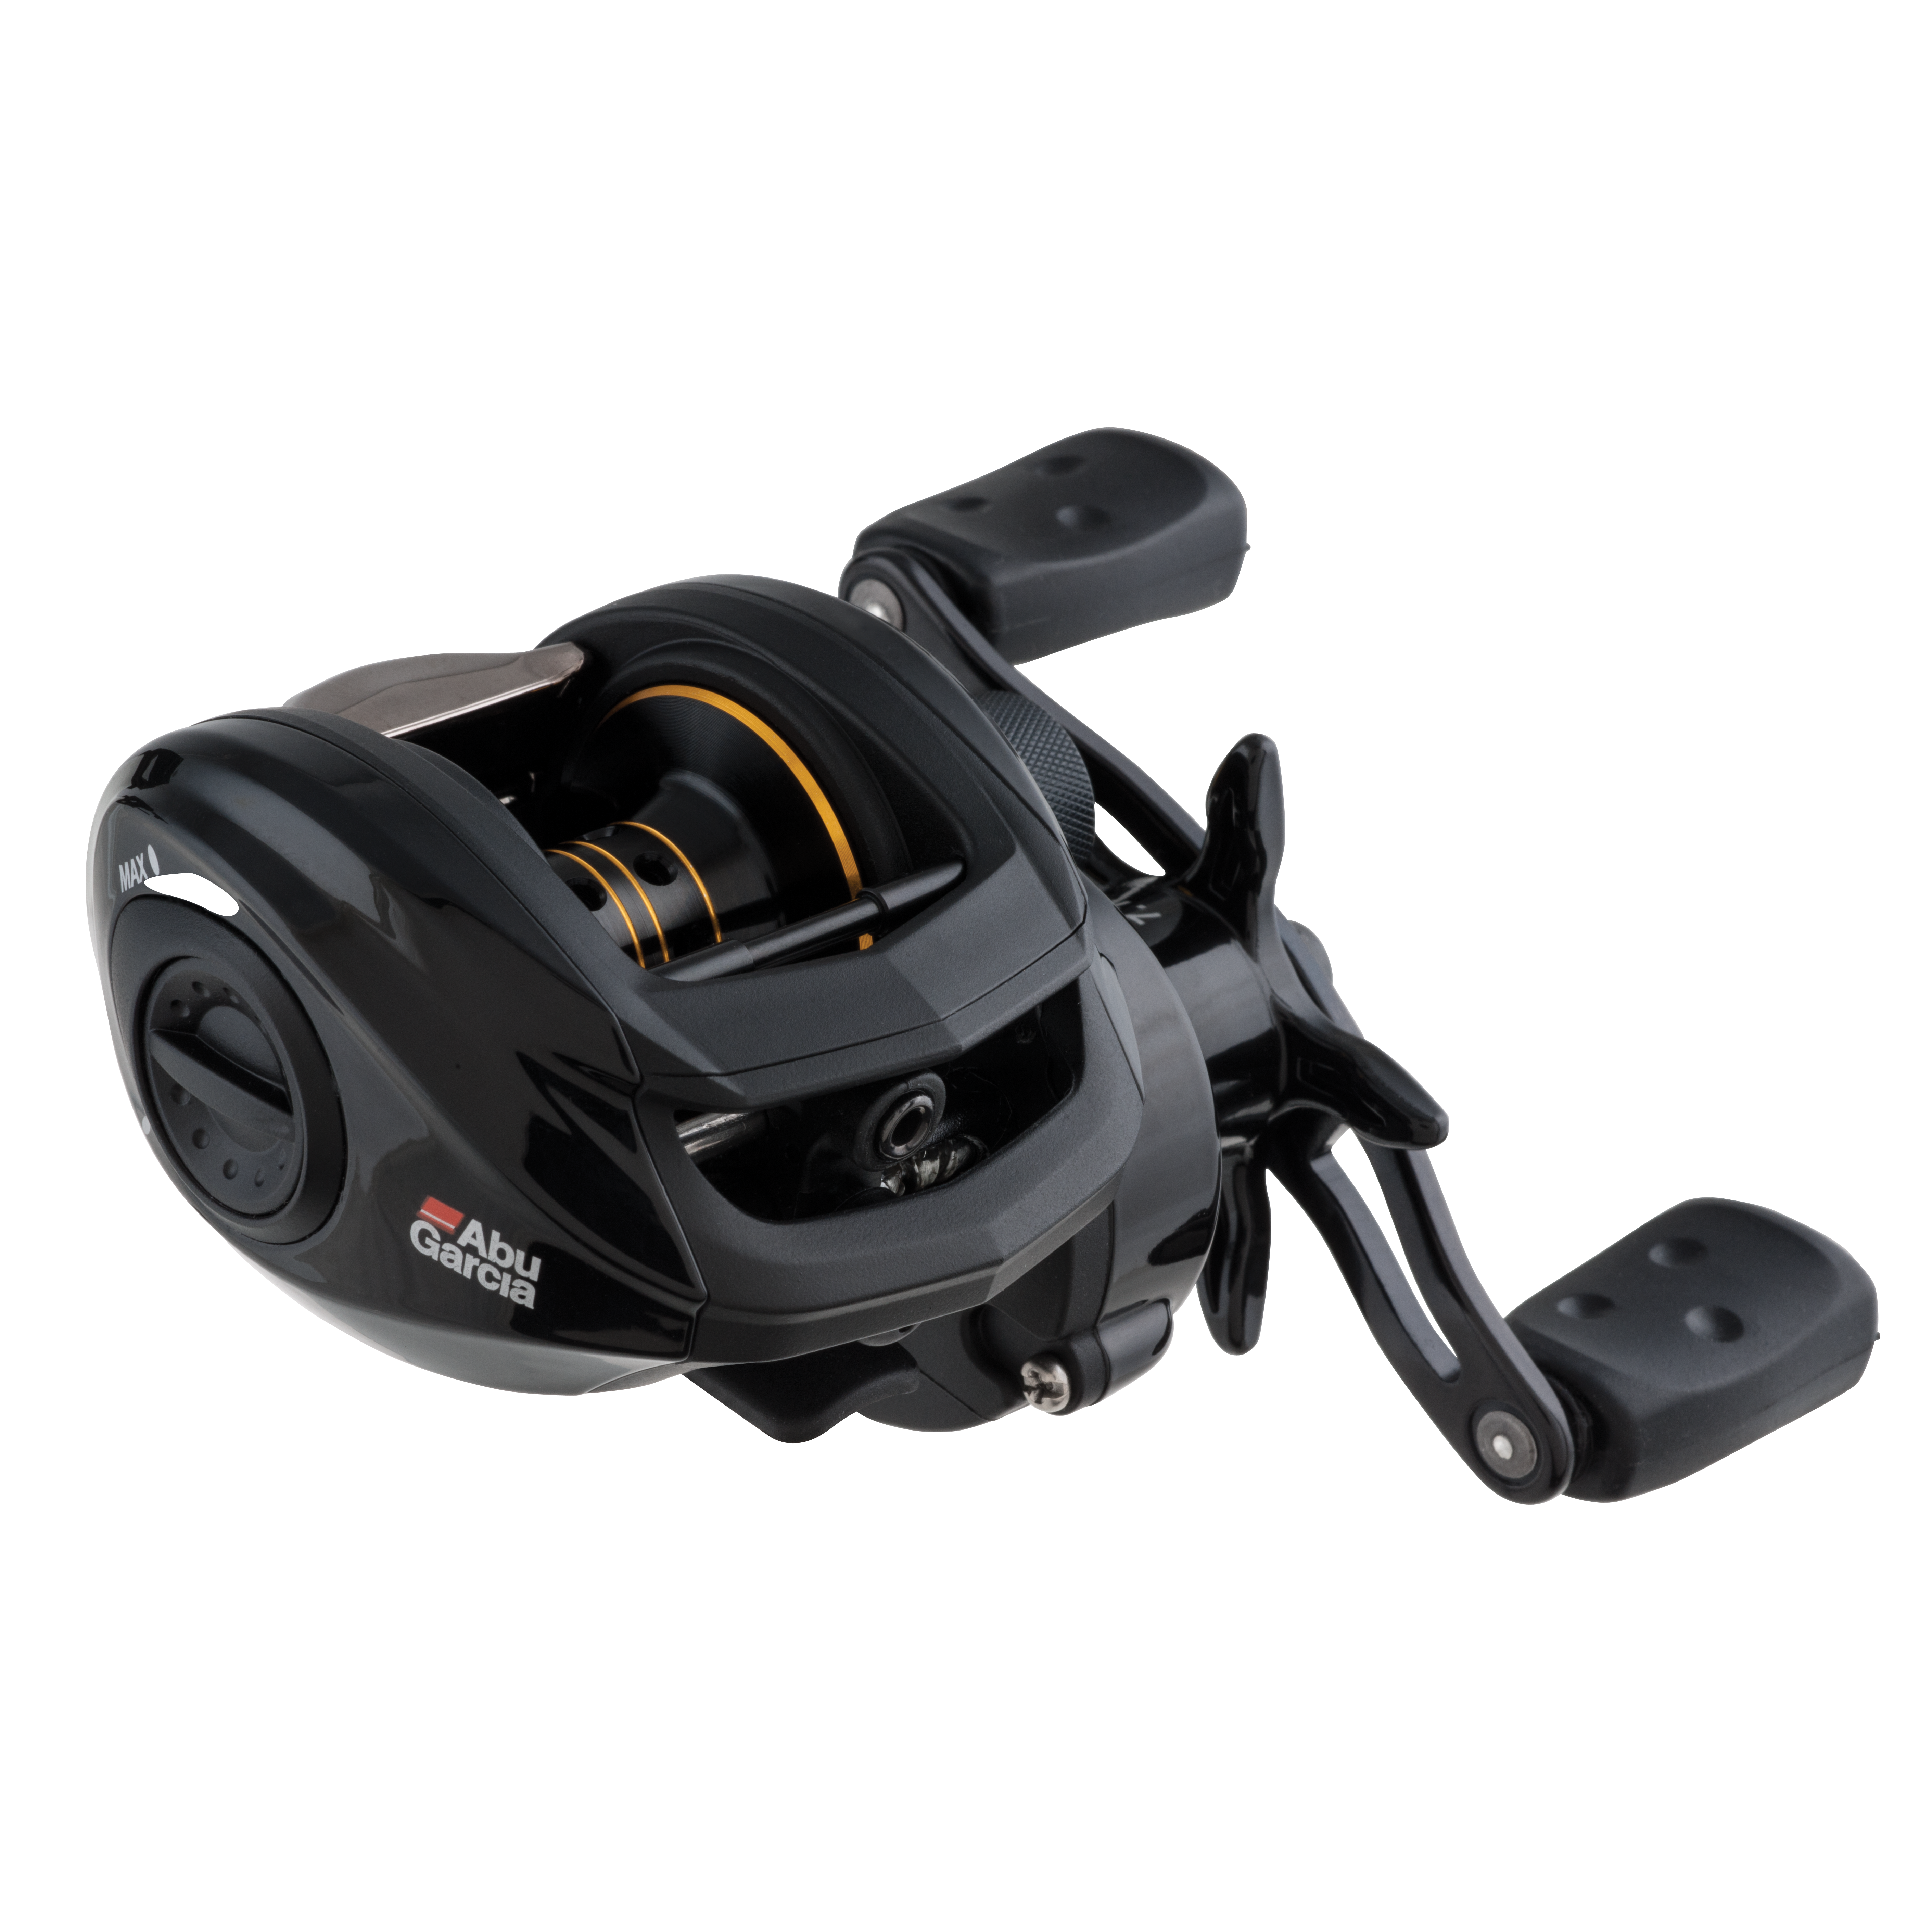 Abu Garcia Pro Max PMAX 6+1BB Ultralight Spinning Fishing Reel 5.2:1 Gear Ratio